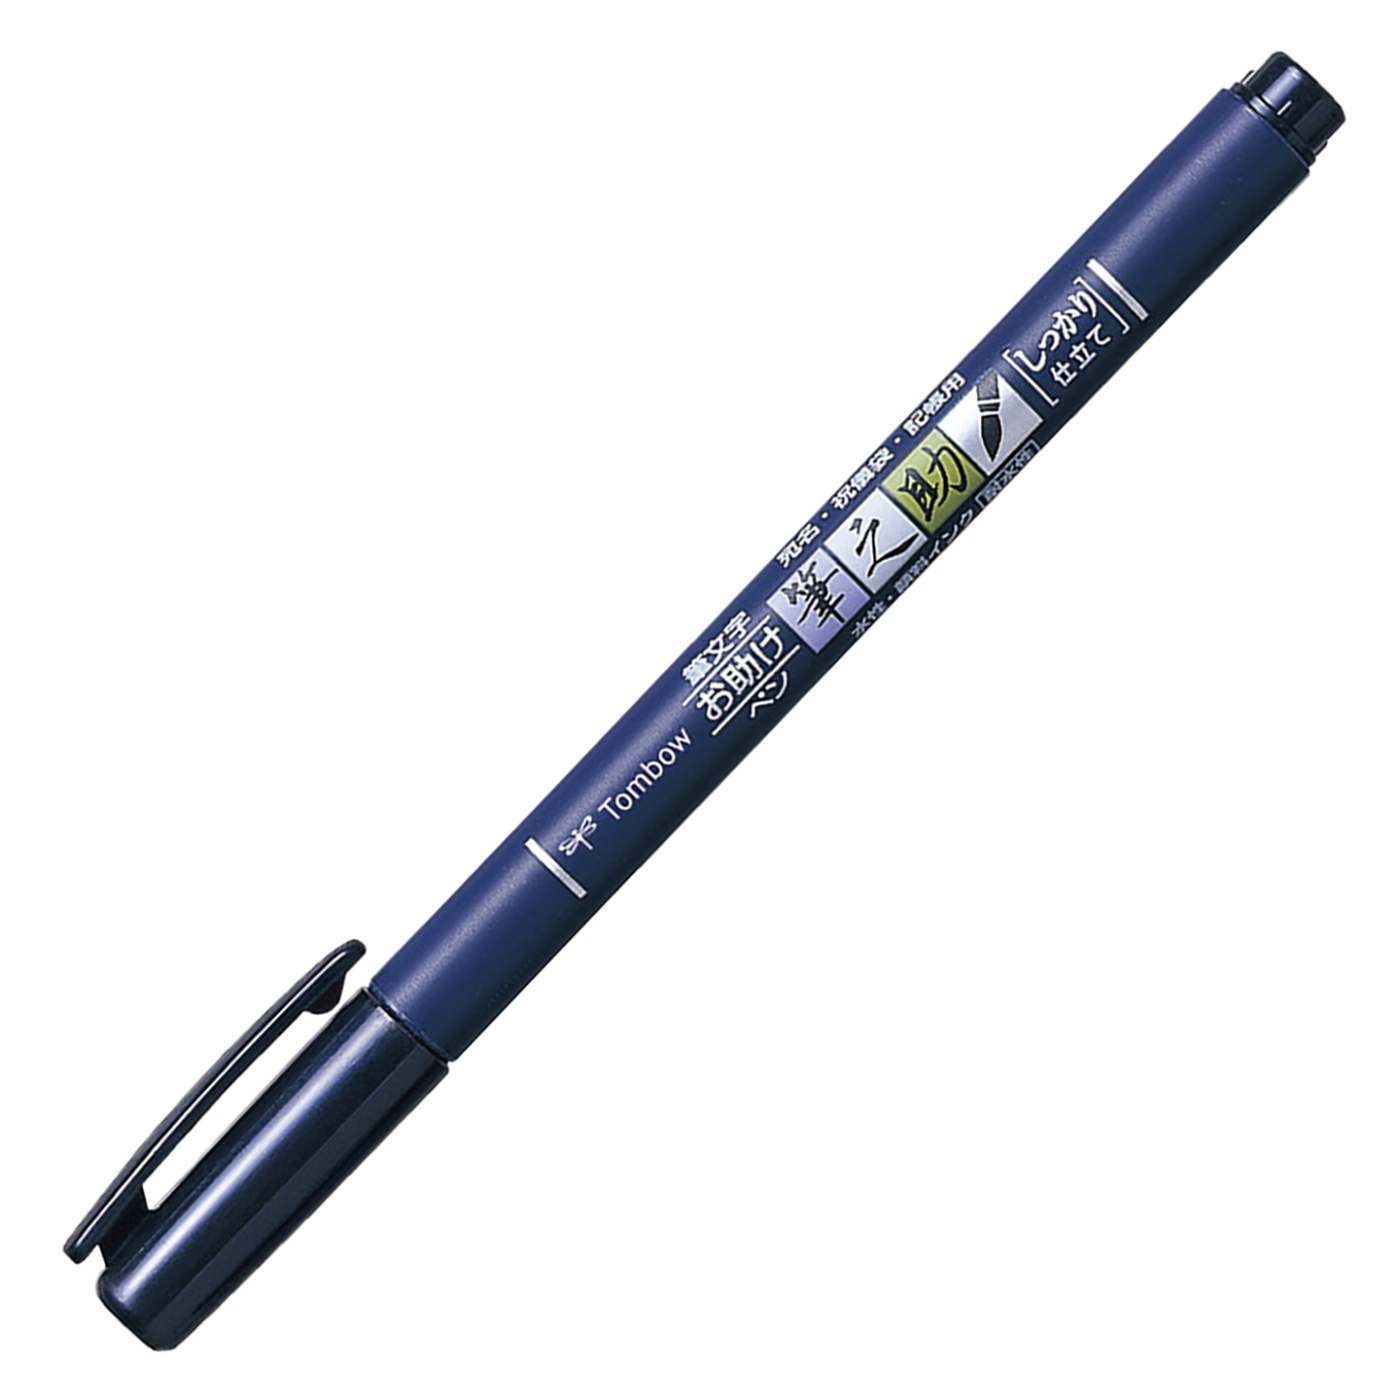 Calligraphy Pen Fudenosuke Hard Tip in the group Pens / Artist Pens / Brush Pens at Pen Store (101084_r)